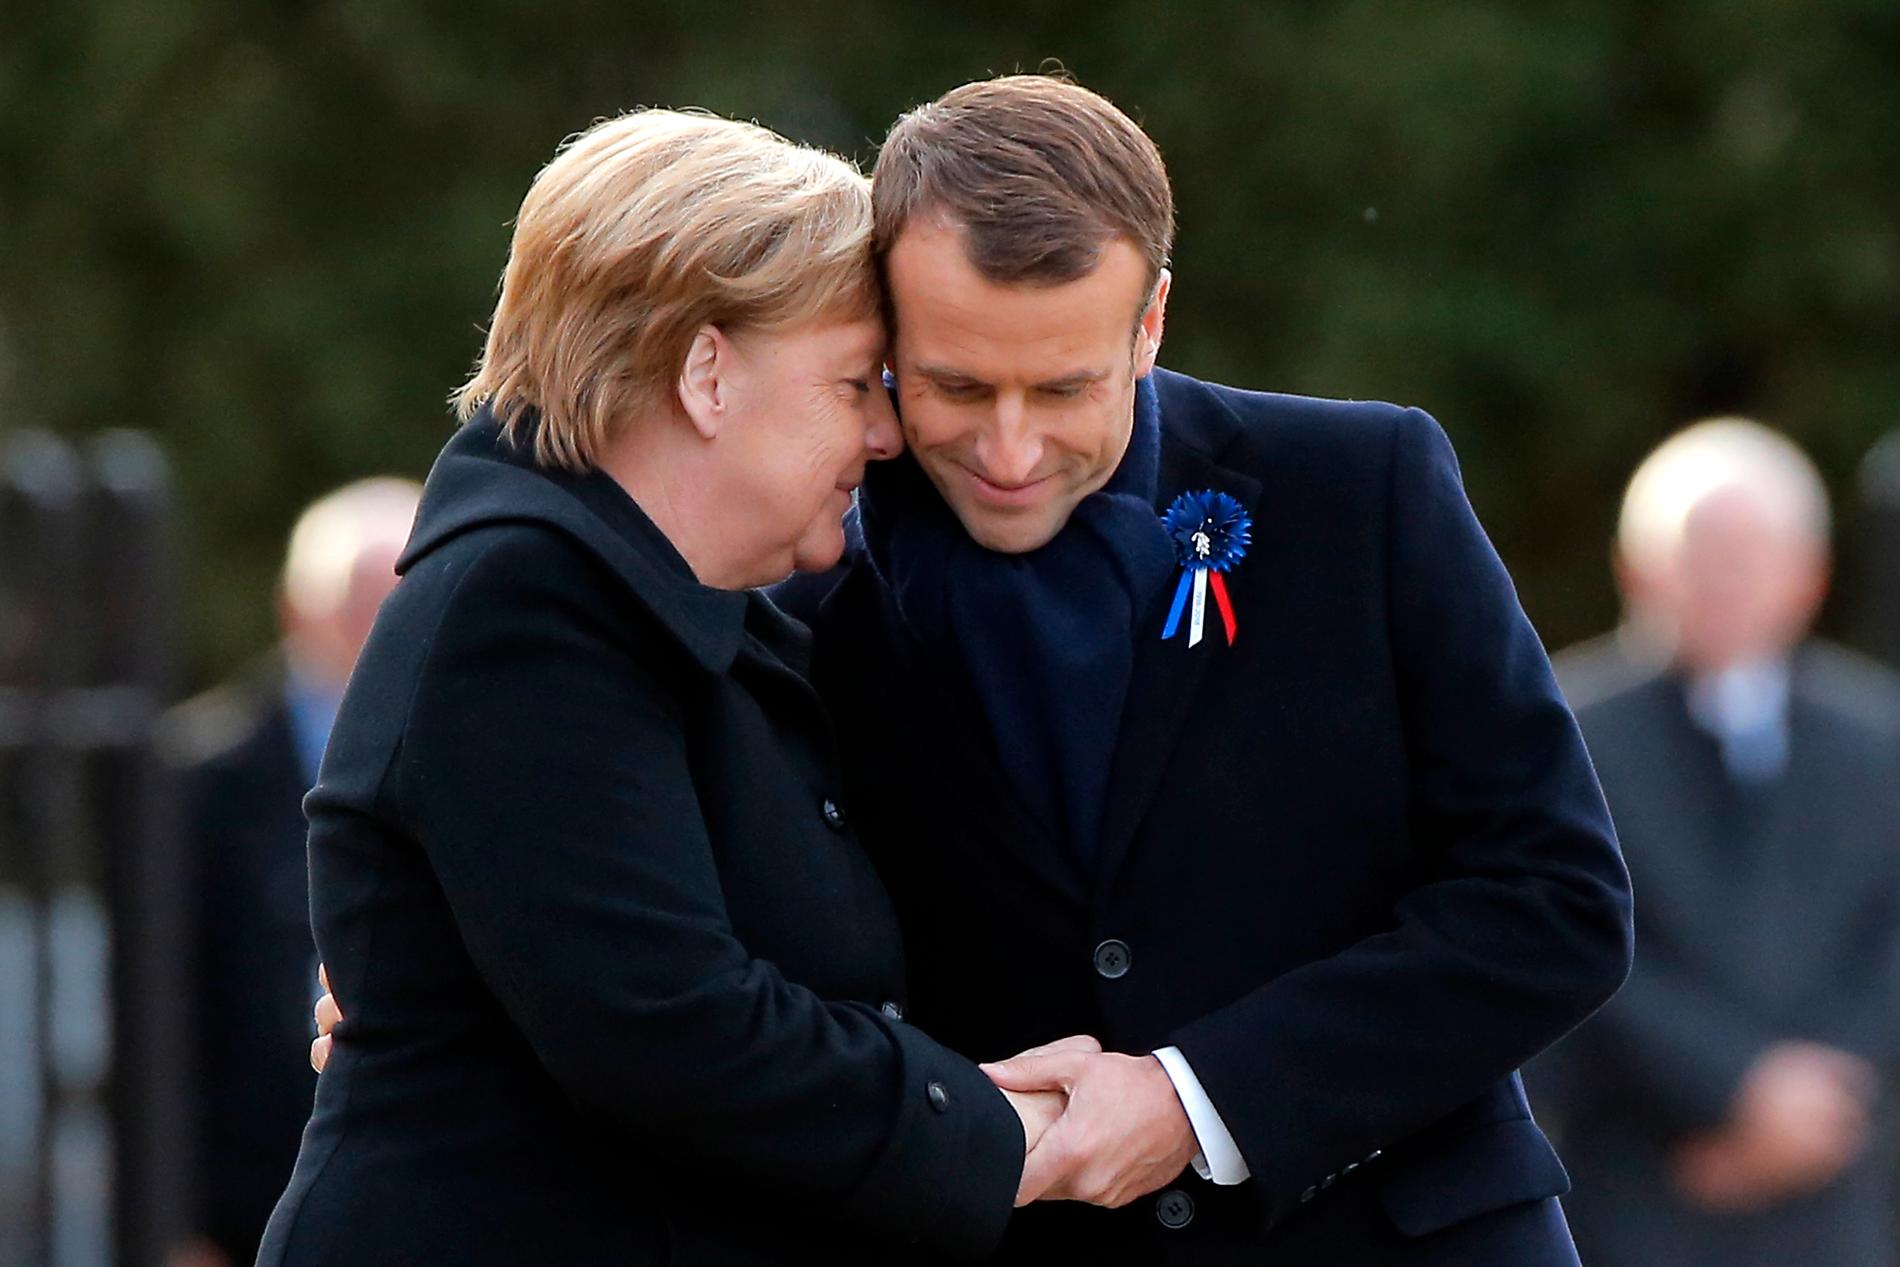 Tysklands förbundskansler Angela Merkel och Frankrikes president Emmanuel Macron vid minnesceremonin av första världskrigets slut för 100 år sedan.